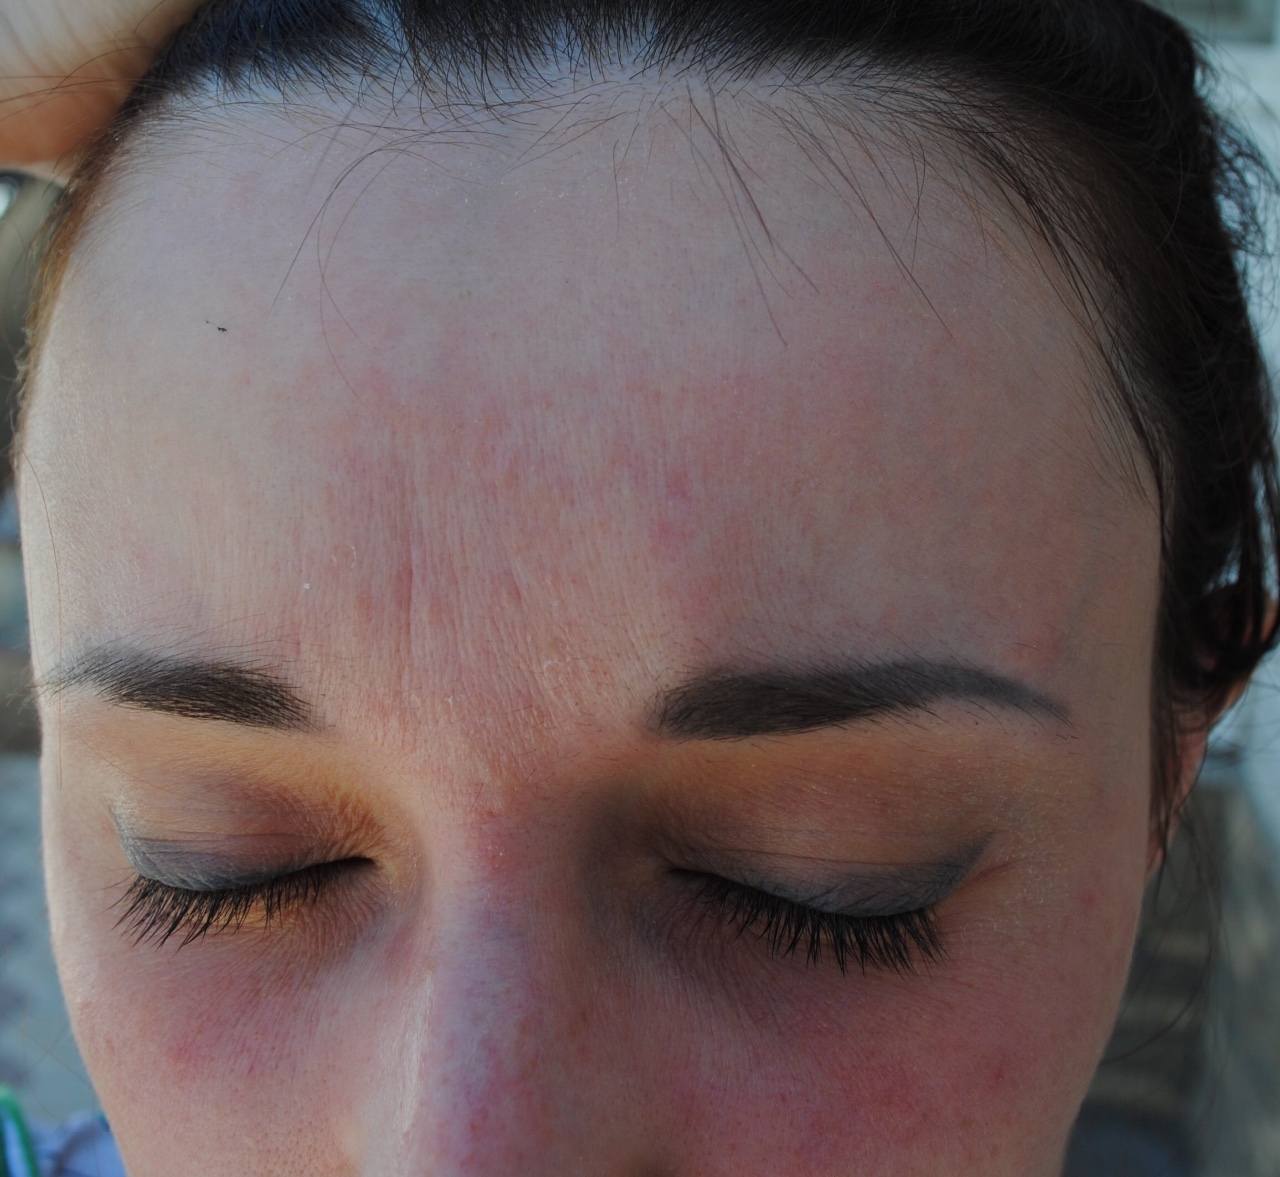 Сыпь на лице в течении 2-х лет, похожая на экзему - Вопрос дерматологу .